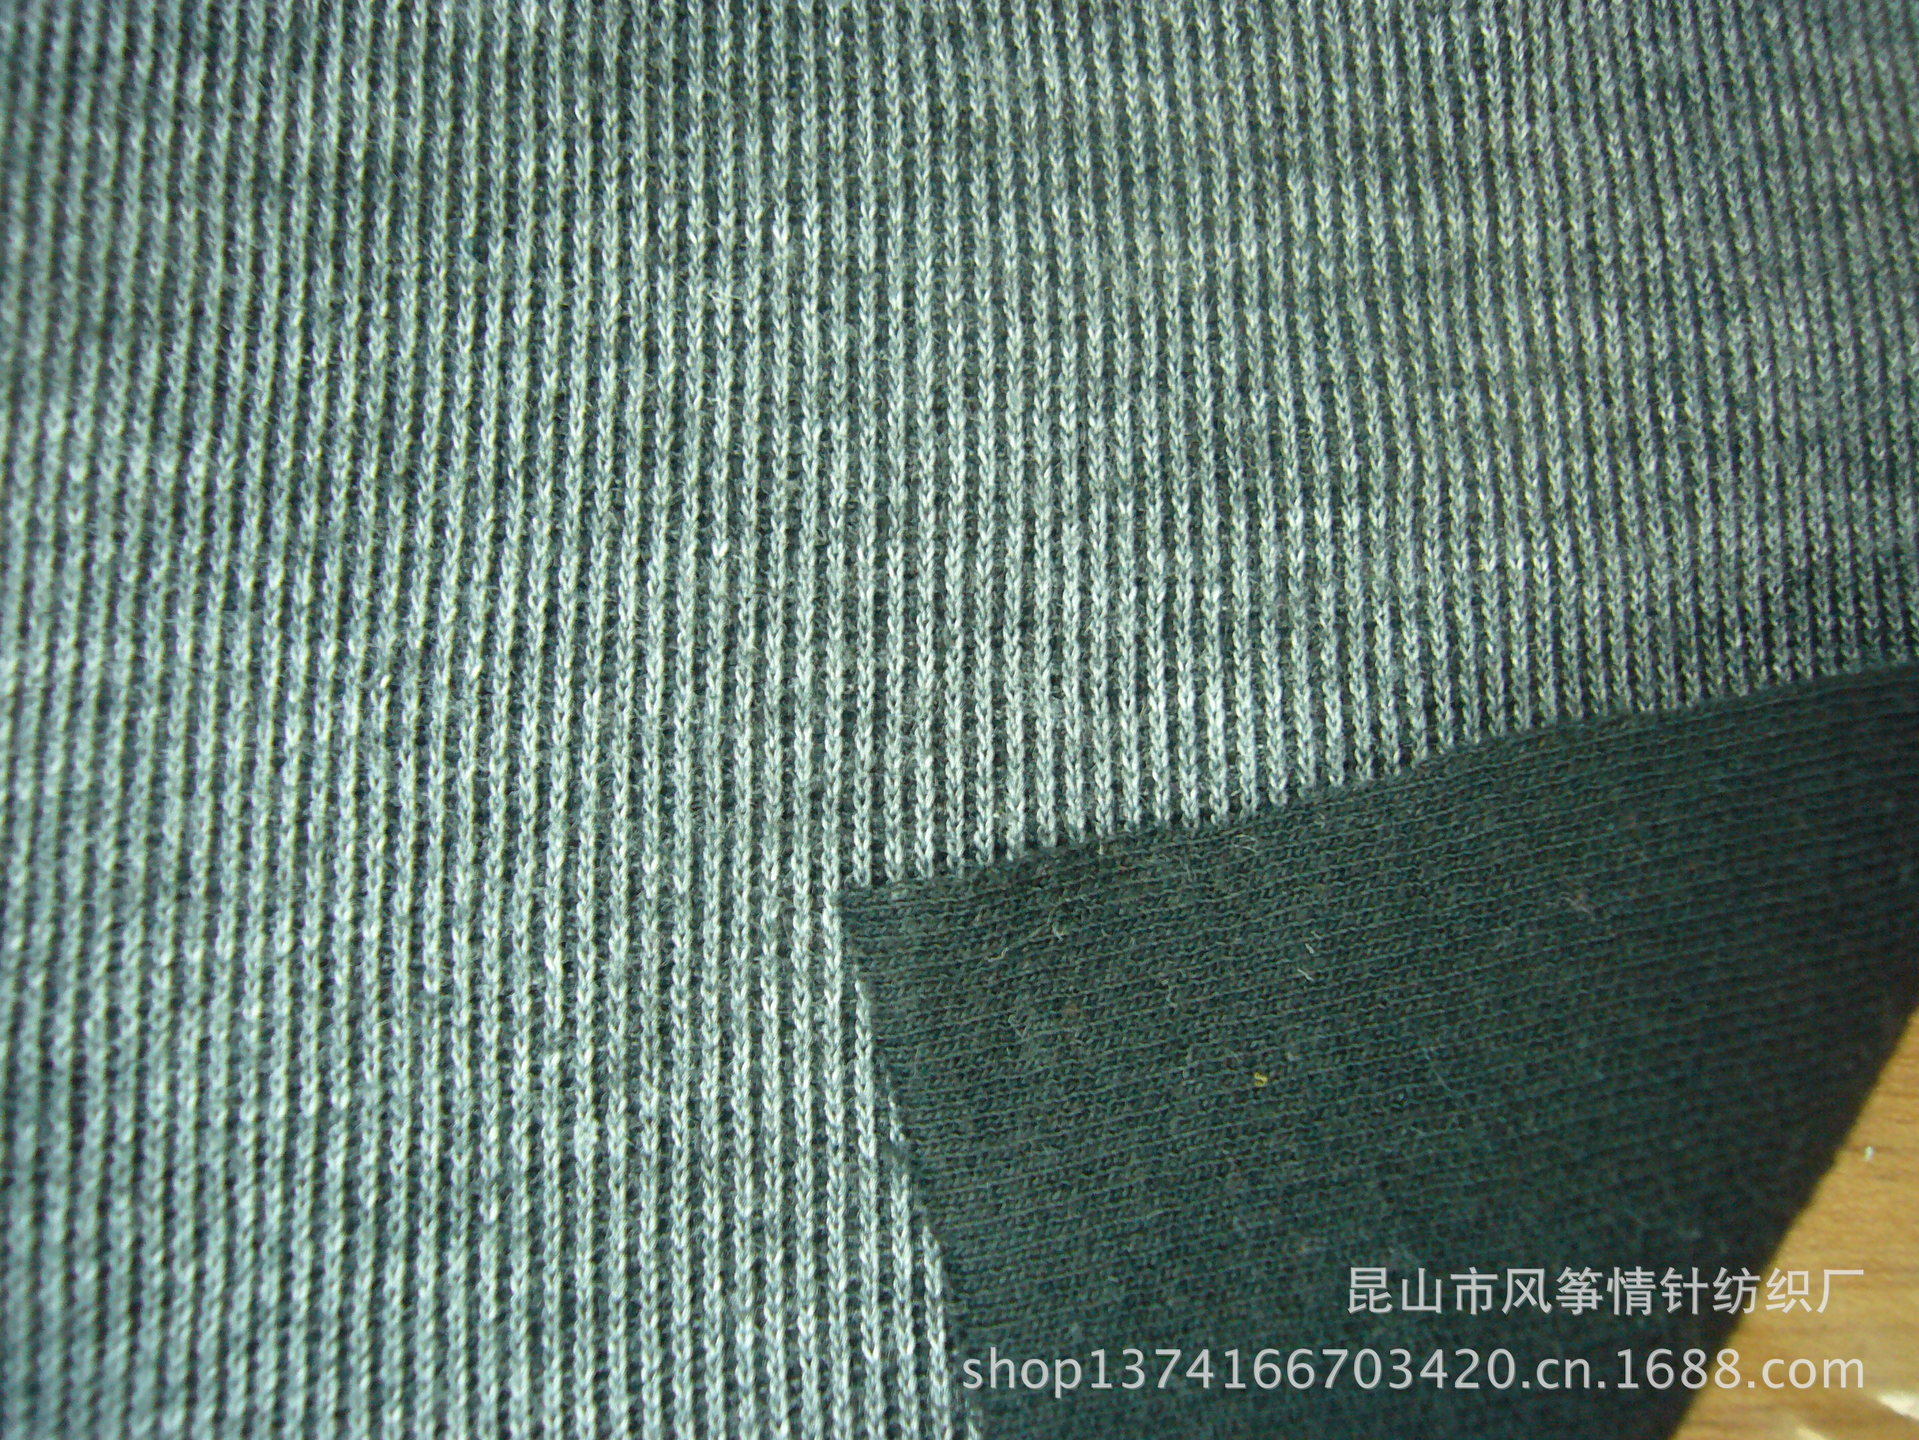 【厂家直销】法式罗纹布 单面罗纹布 针织面料